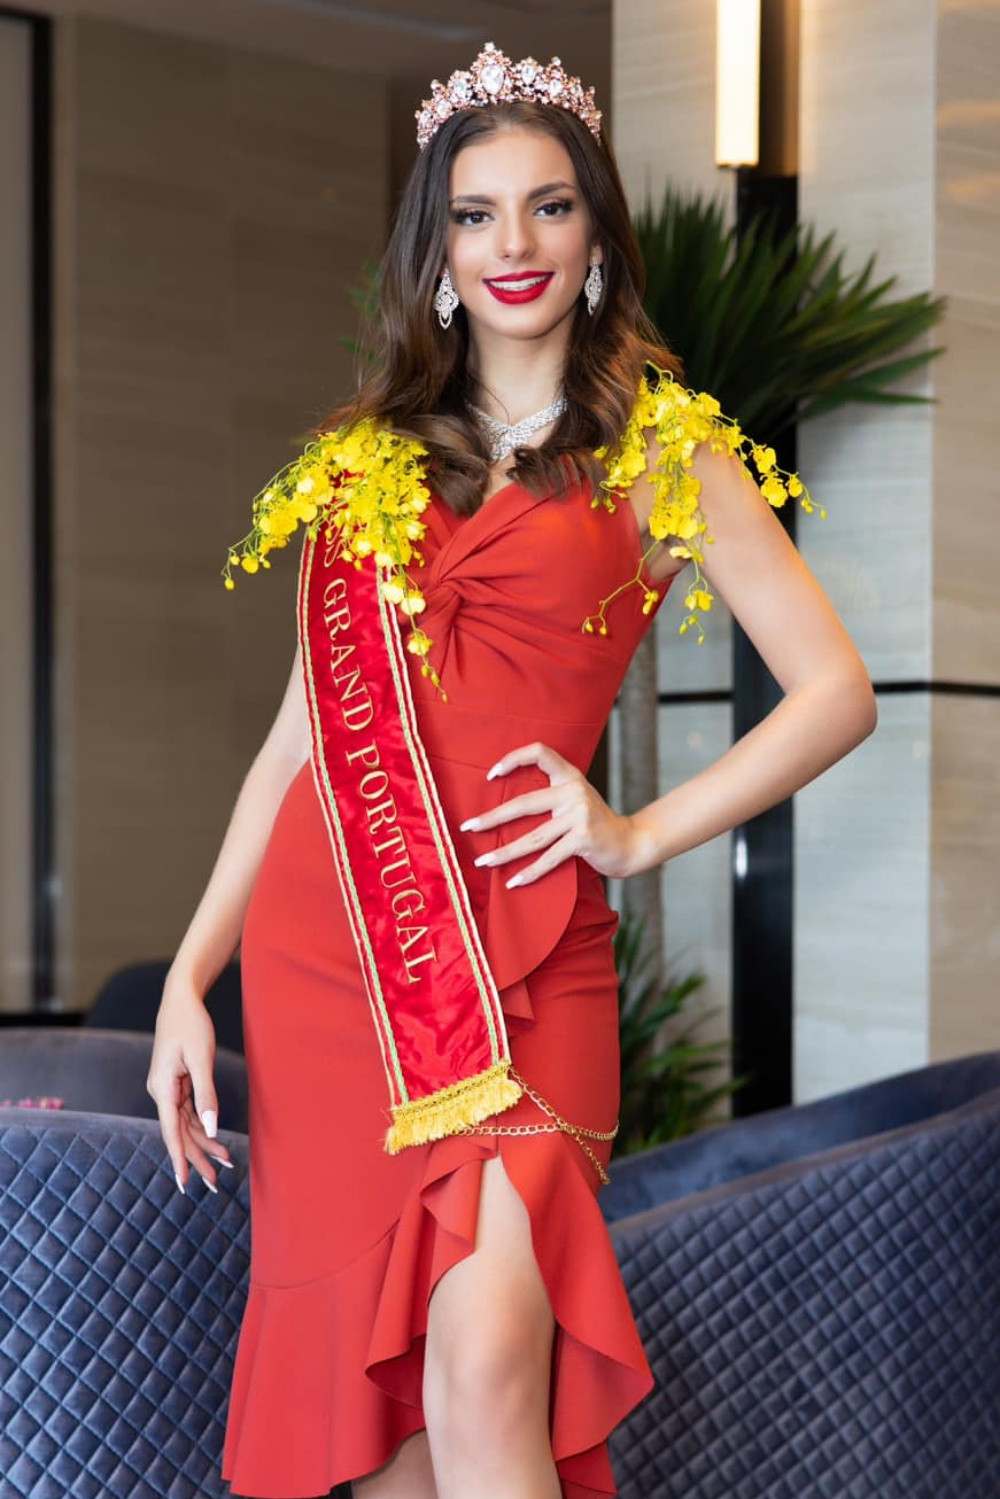 Lý do không ngờ khiến người đẹp Bồ Đào Nha bỏ cuộc tại Hoa hậu Hoà bình 2023